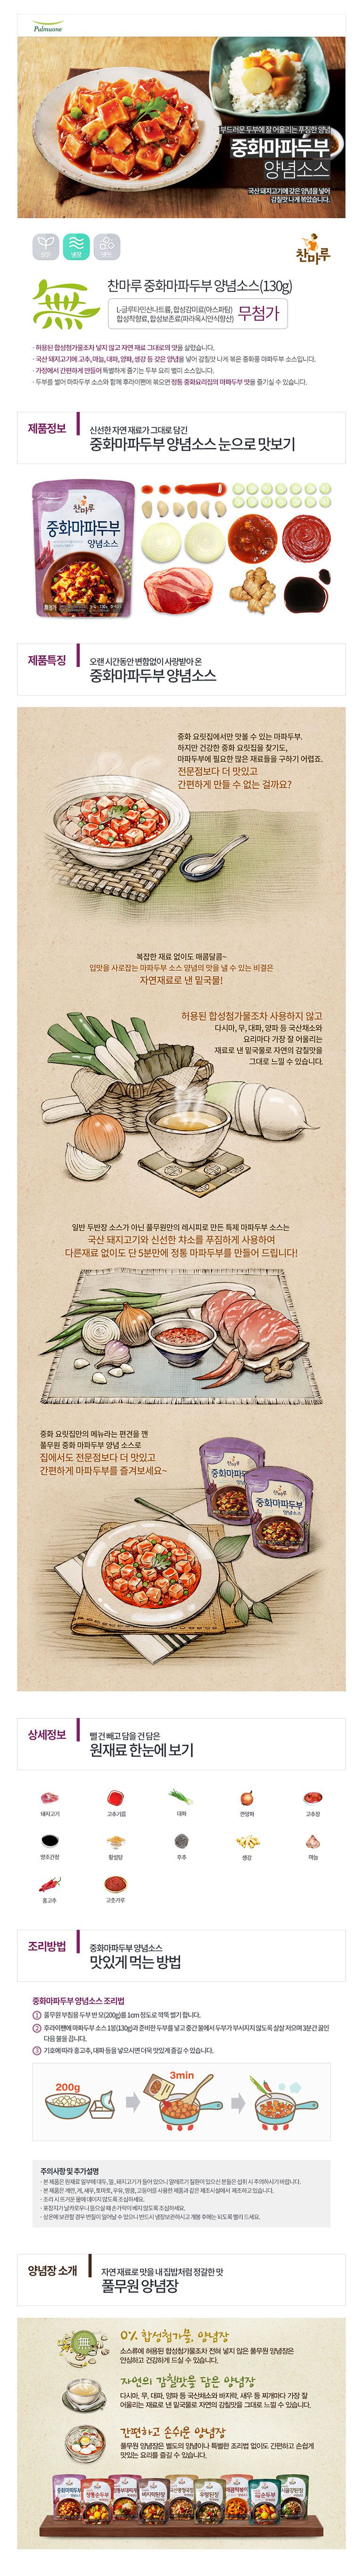 韓國食品-[풀무원] 중화마파두부양념소스 130g